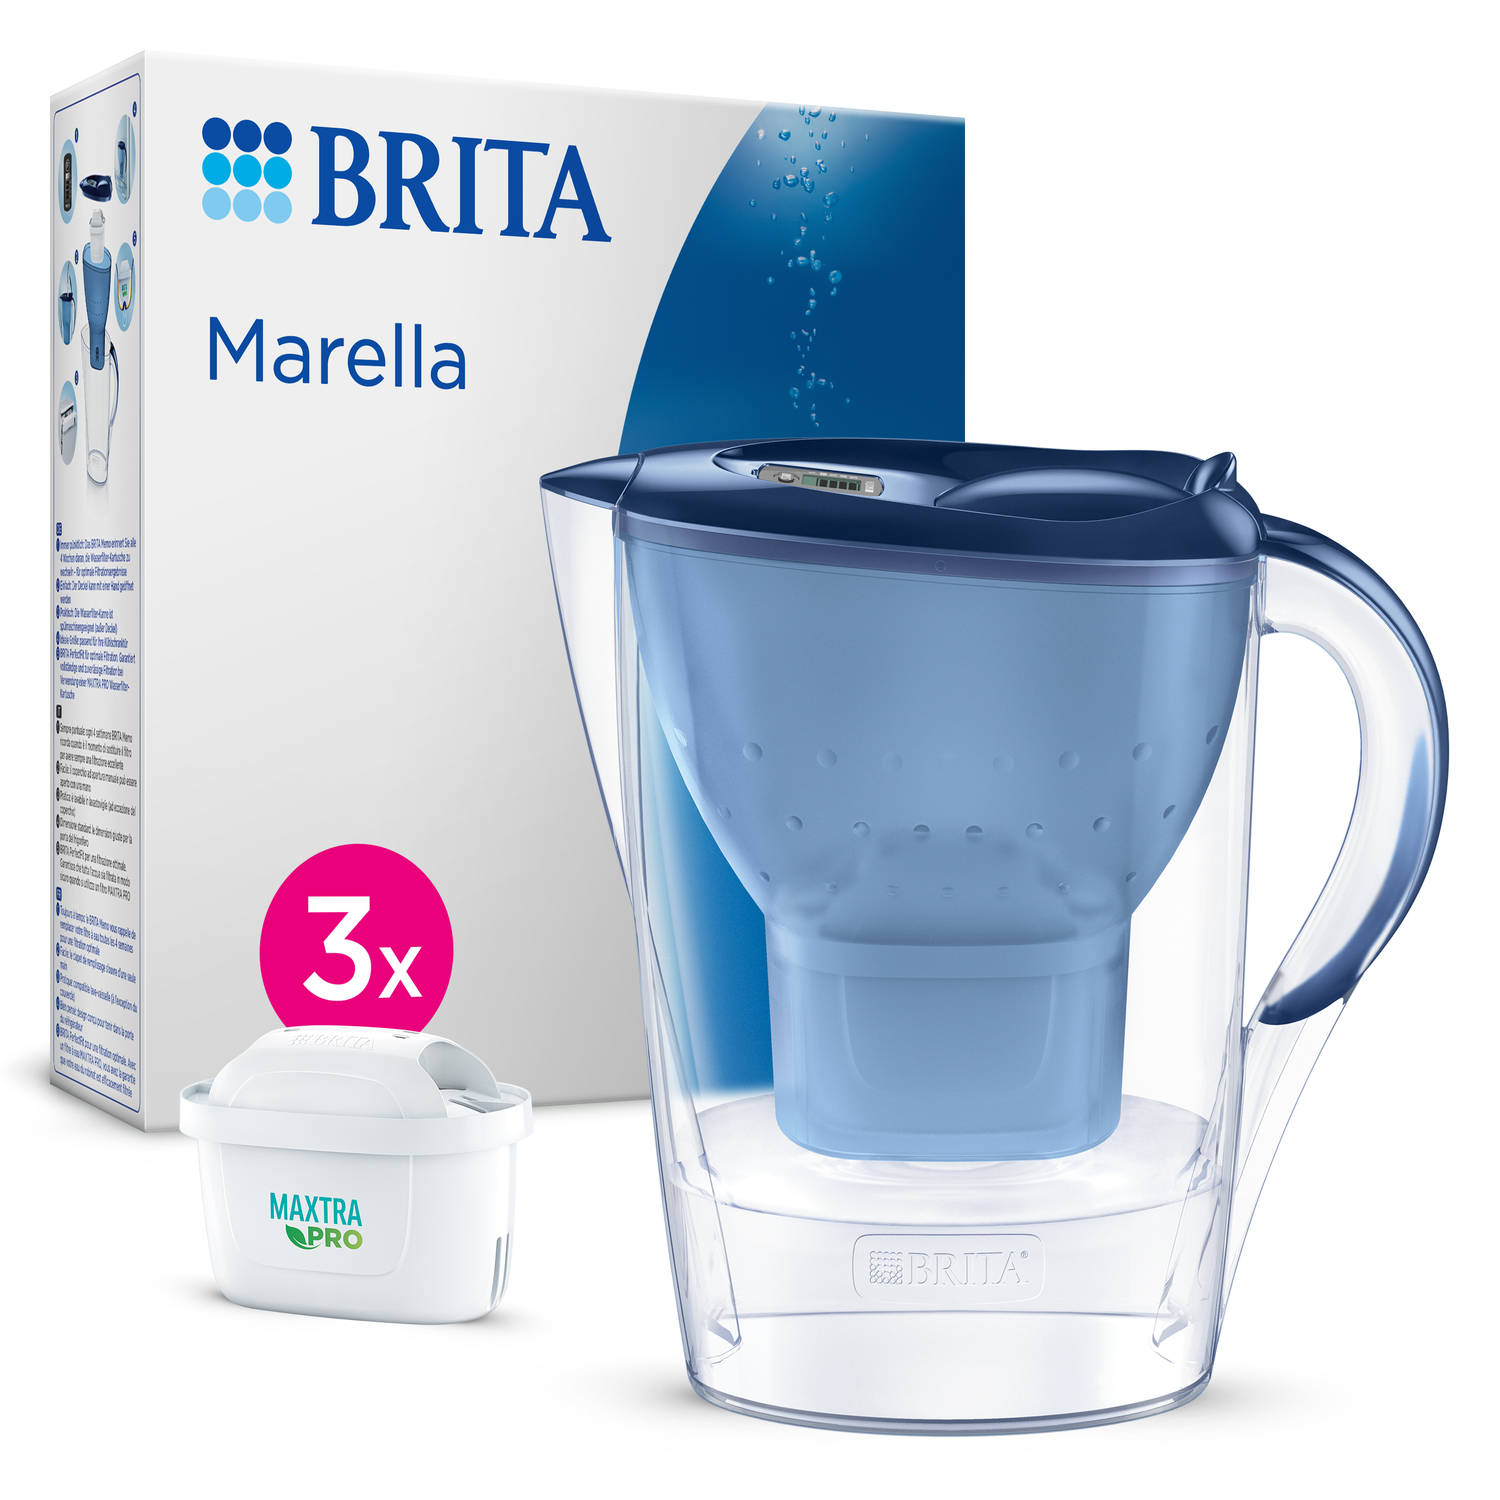 BRITA - Waterfilterkan - Marella Cool - Blauw - 2,4L + 3 MAXTRA Pro All-in-One Waterfilterpatronen - Voordeelverpakking